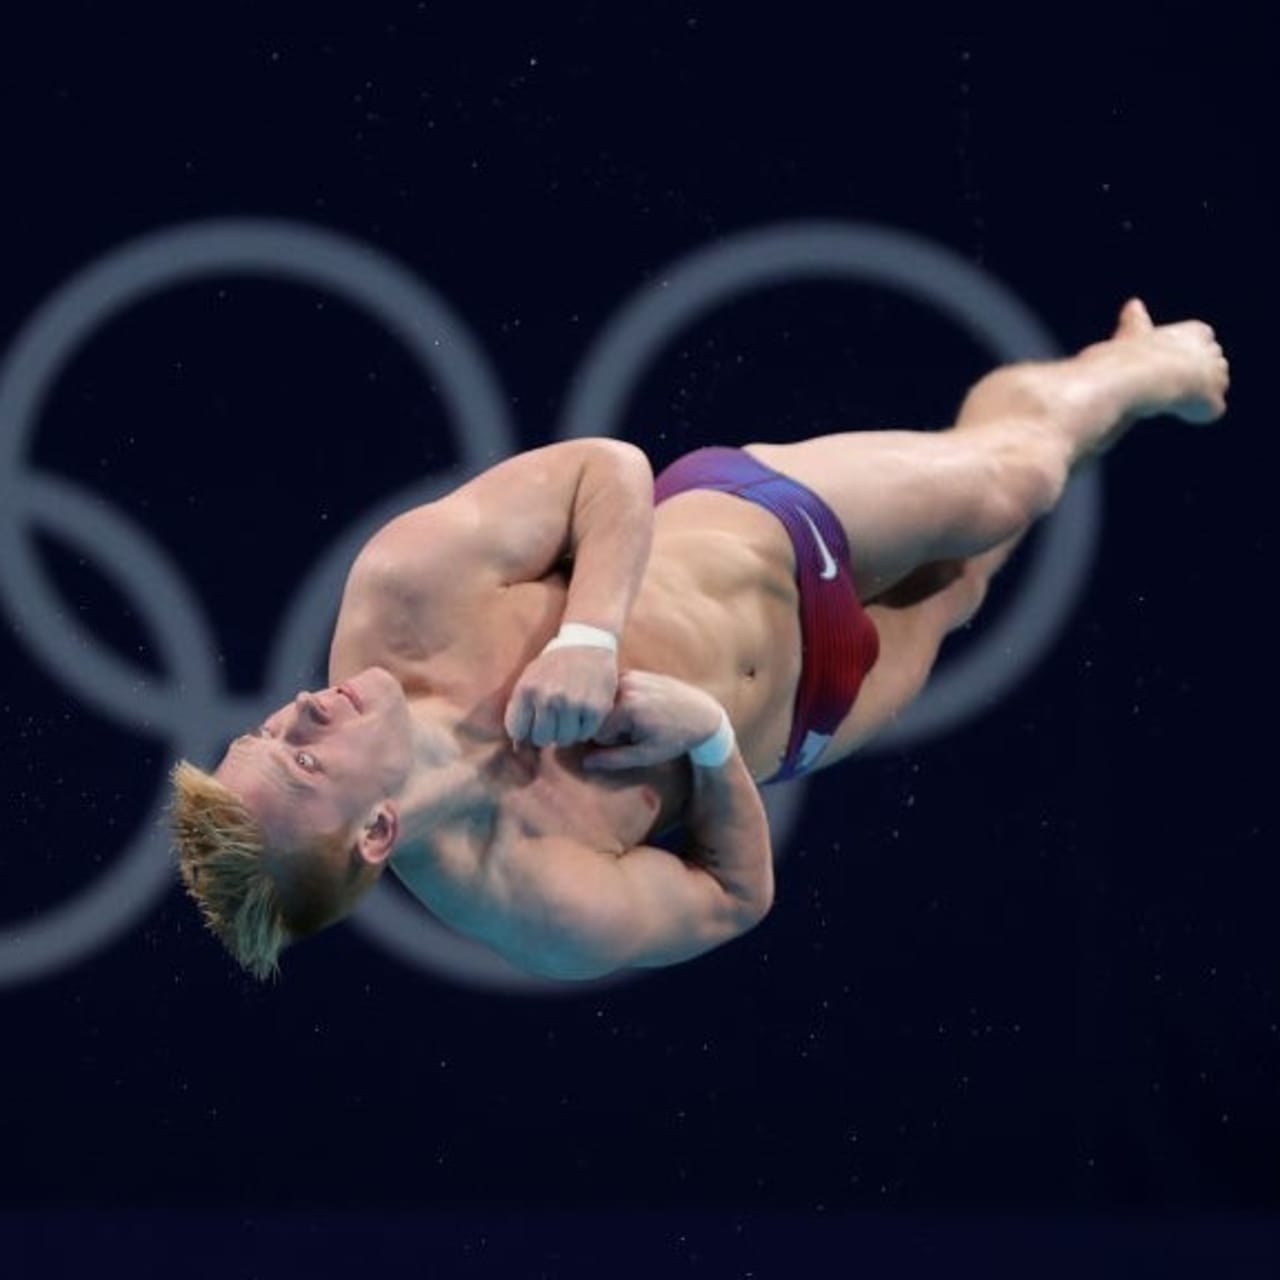 다이빙 2020 년 하계 올림픽